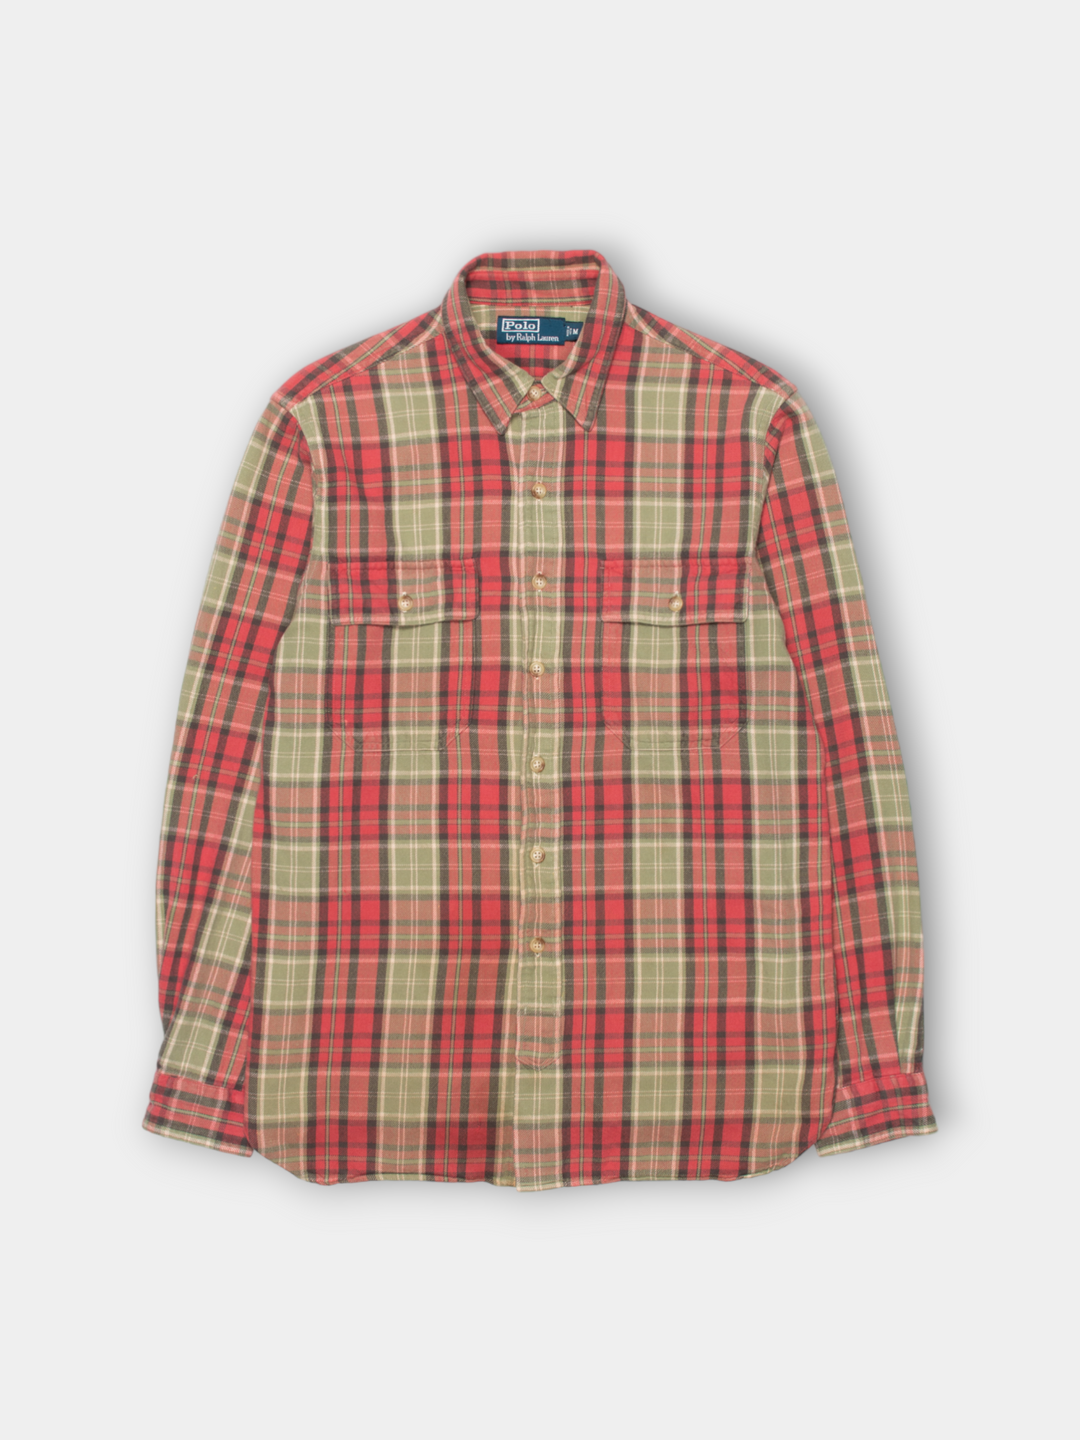 90s Ralph Lauren Flannel Shirt (M)